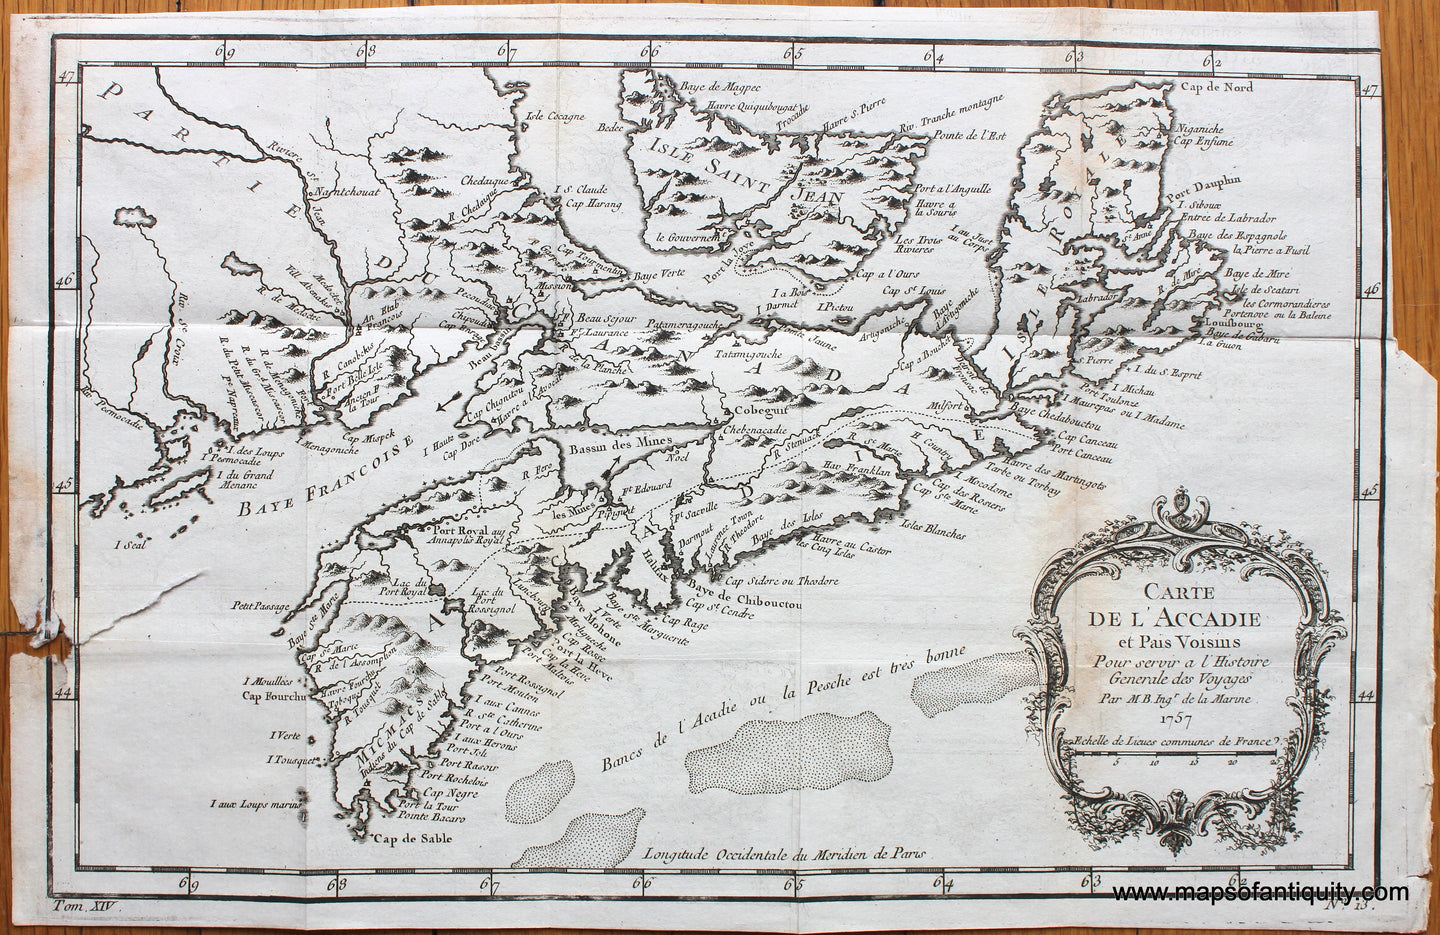 1757 - Carte De L'Accadie et Pai Voisins - Antique Map